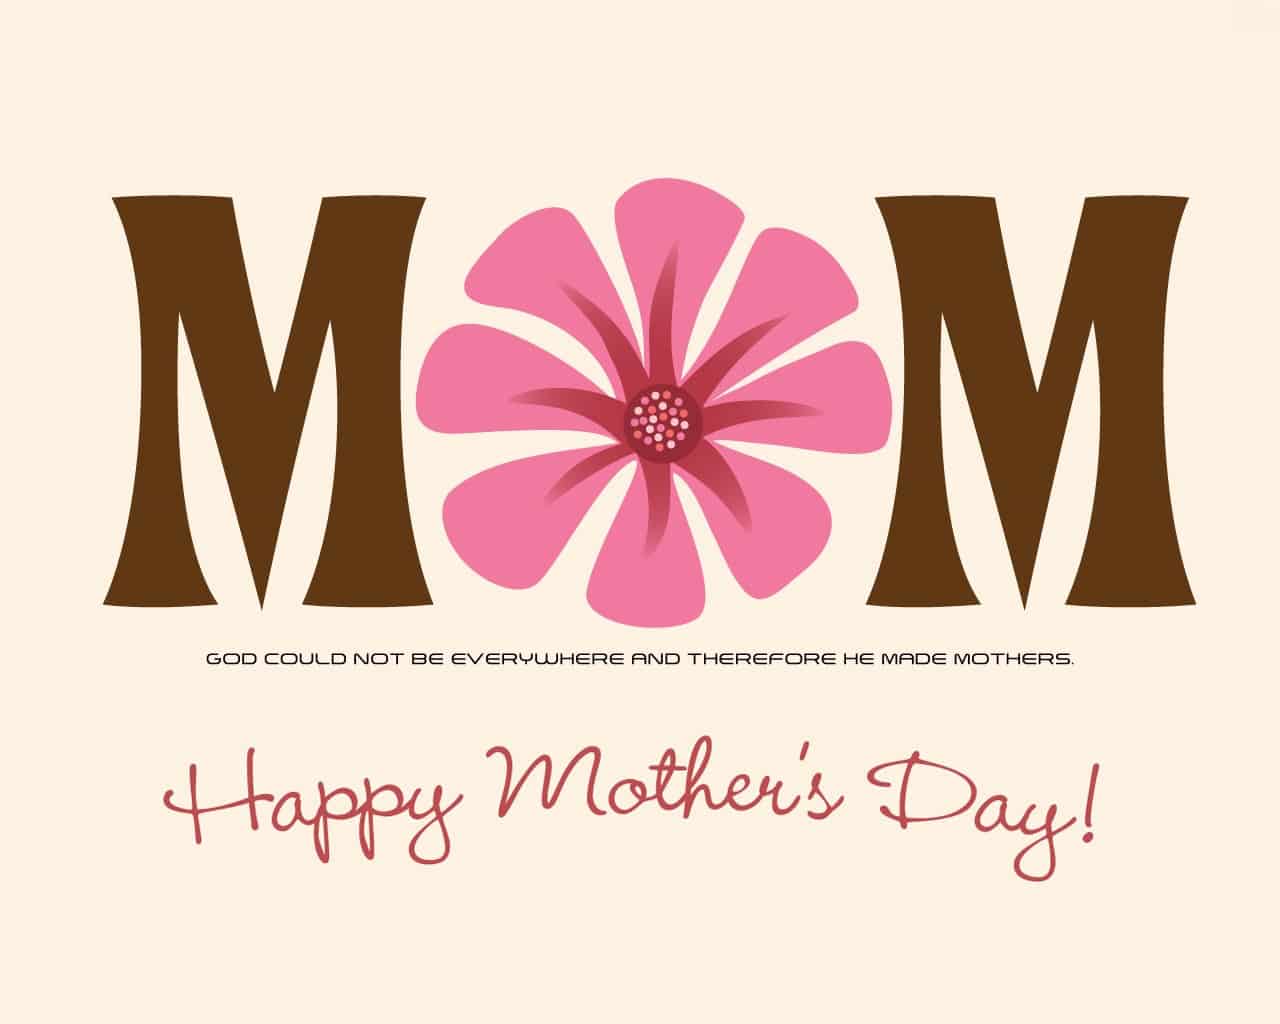 صور وكروت وبطاقات معايدة لعيد الأم - Happy Mother's Day 2020 203